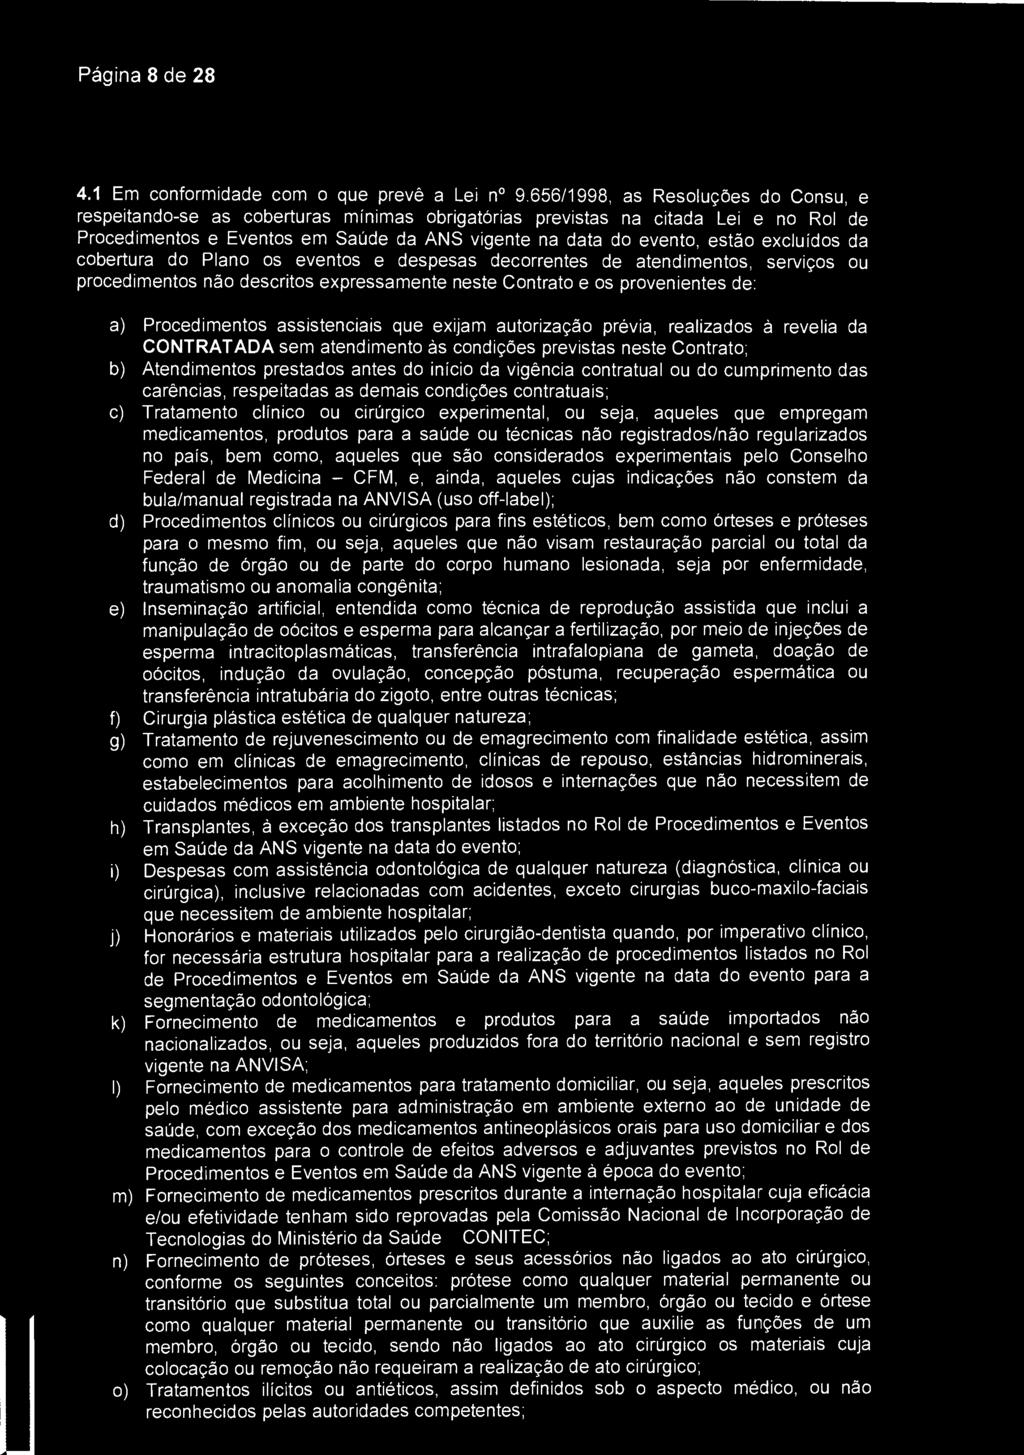 Página 8 de 28 SantaCaça) São José dos Campos 4.1 Em conformidade com o que prevê a Lei n 9.